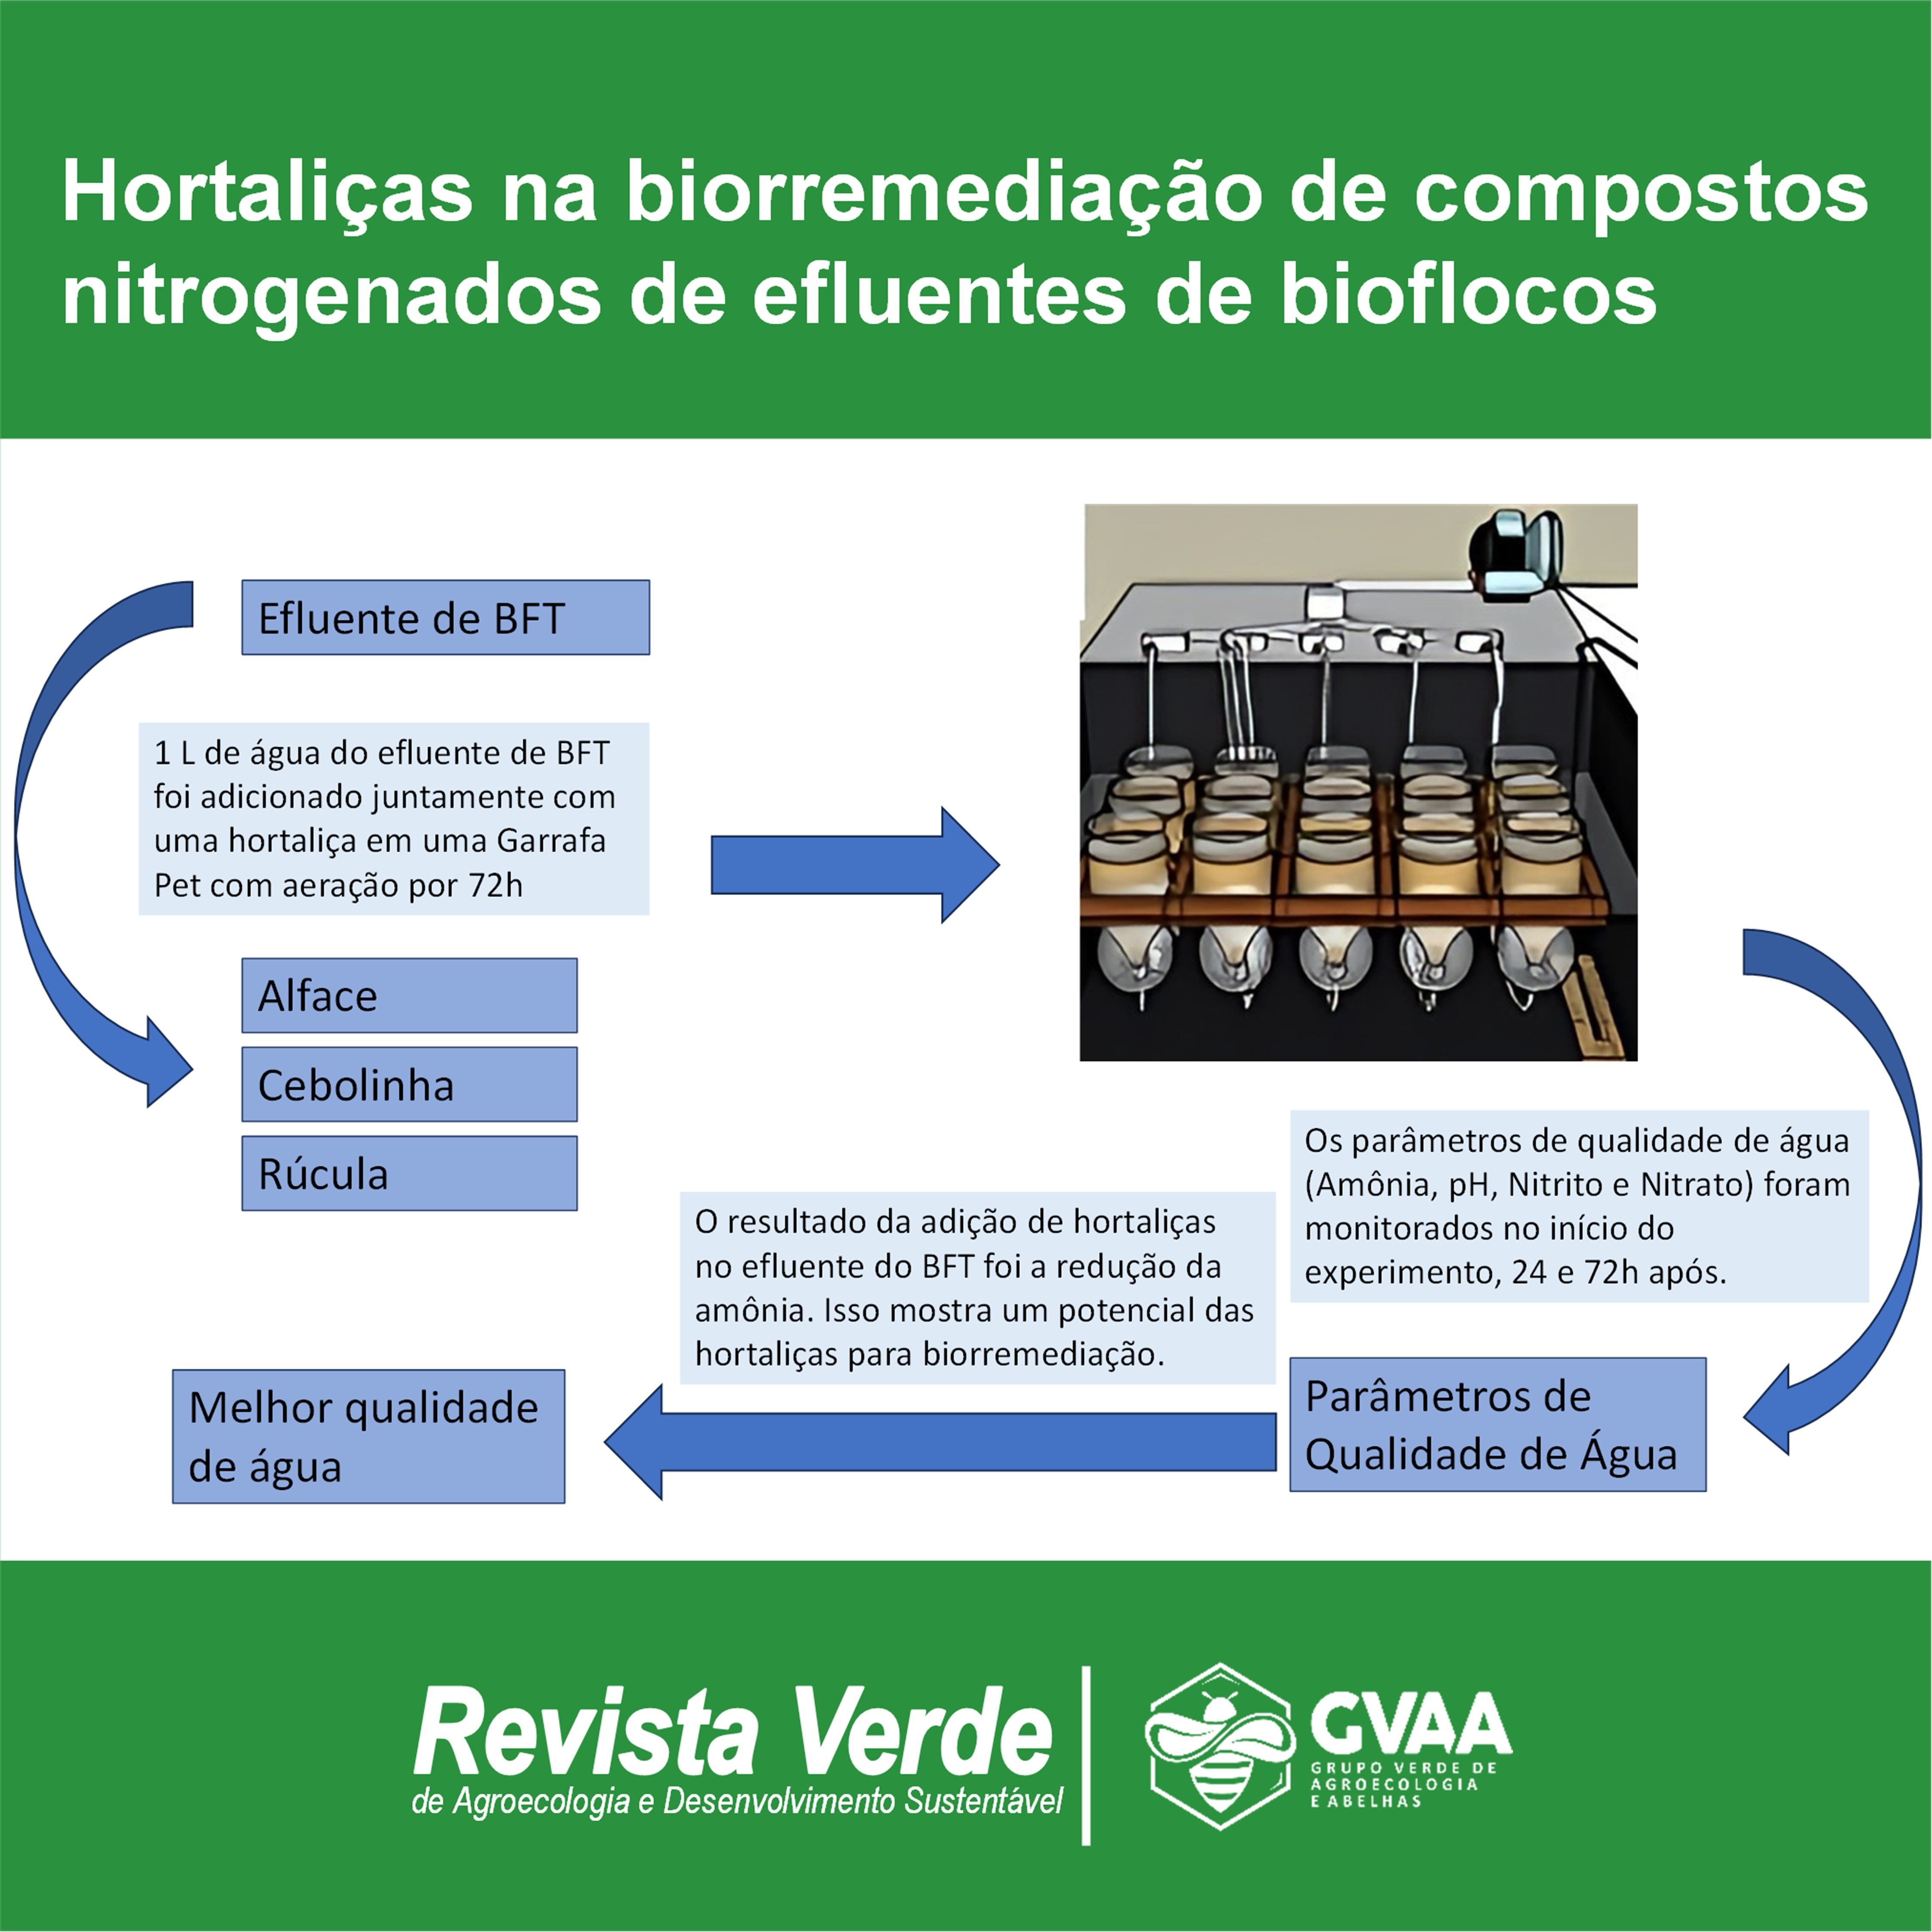 Hortaliças na biorremediação de compostos nitrogenados de efluentes de bioflocos